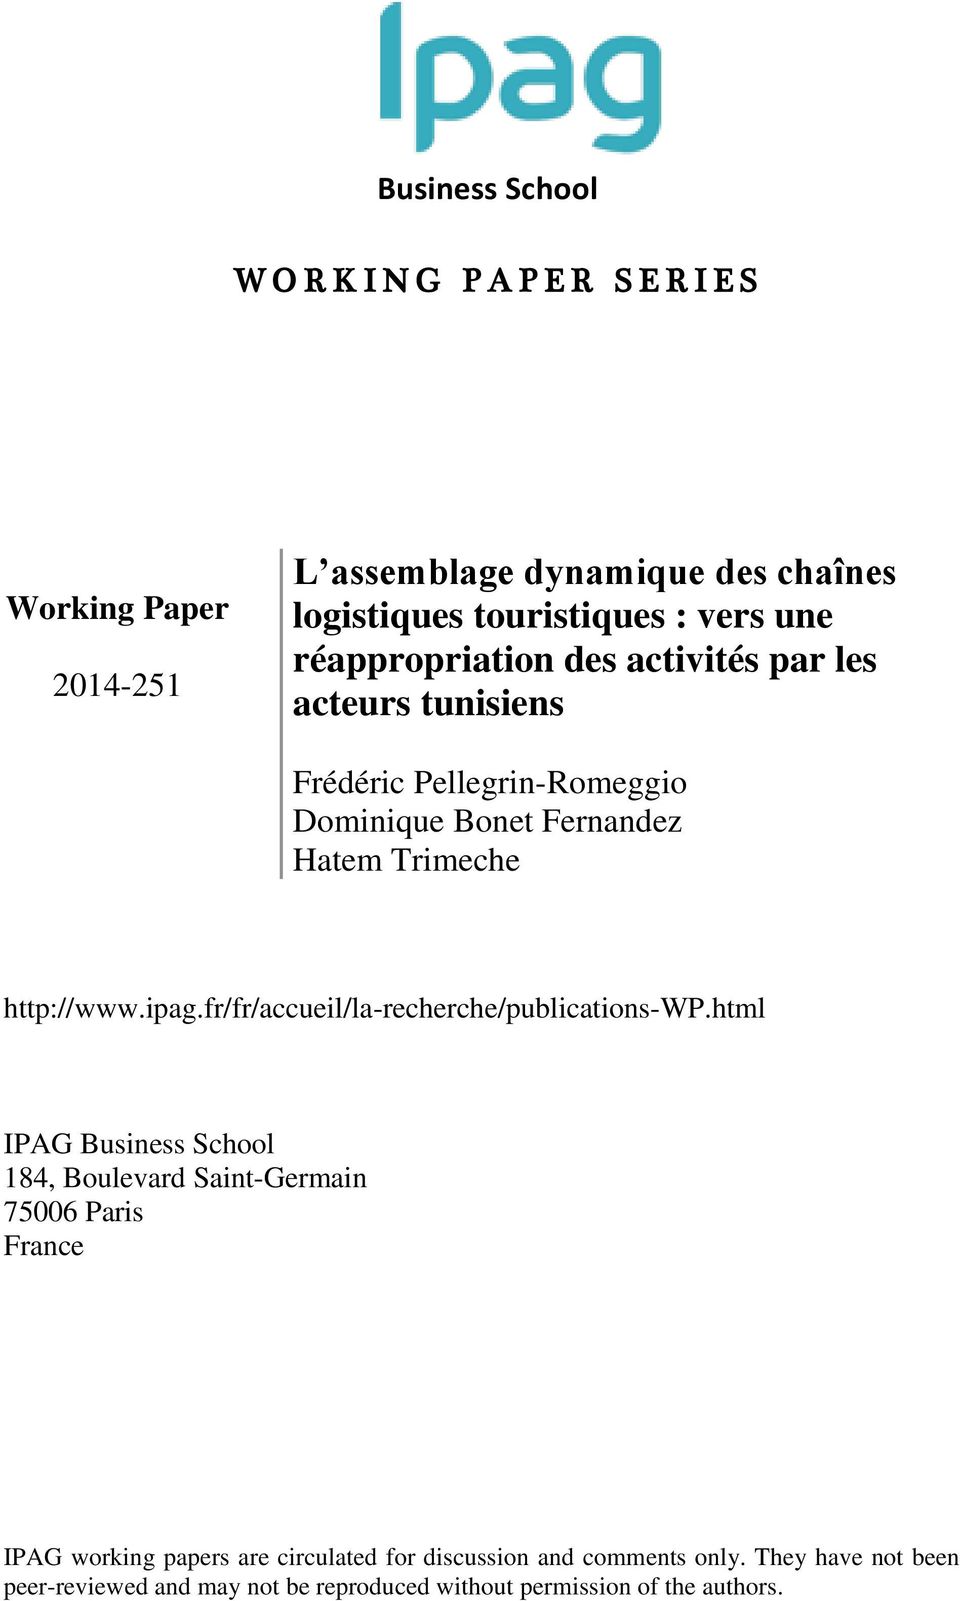 ipag.fr/fr/accueil/la-recherche/publications-wp.